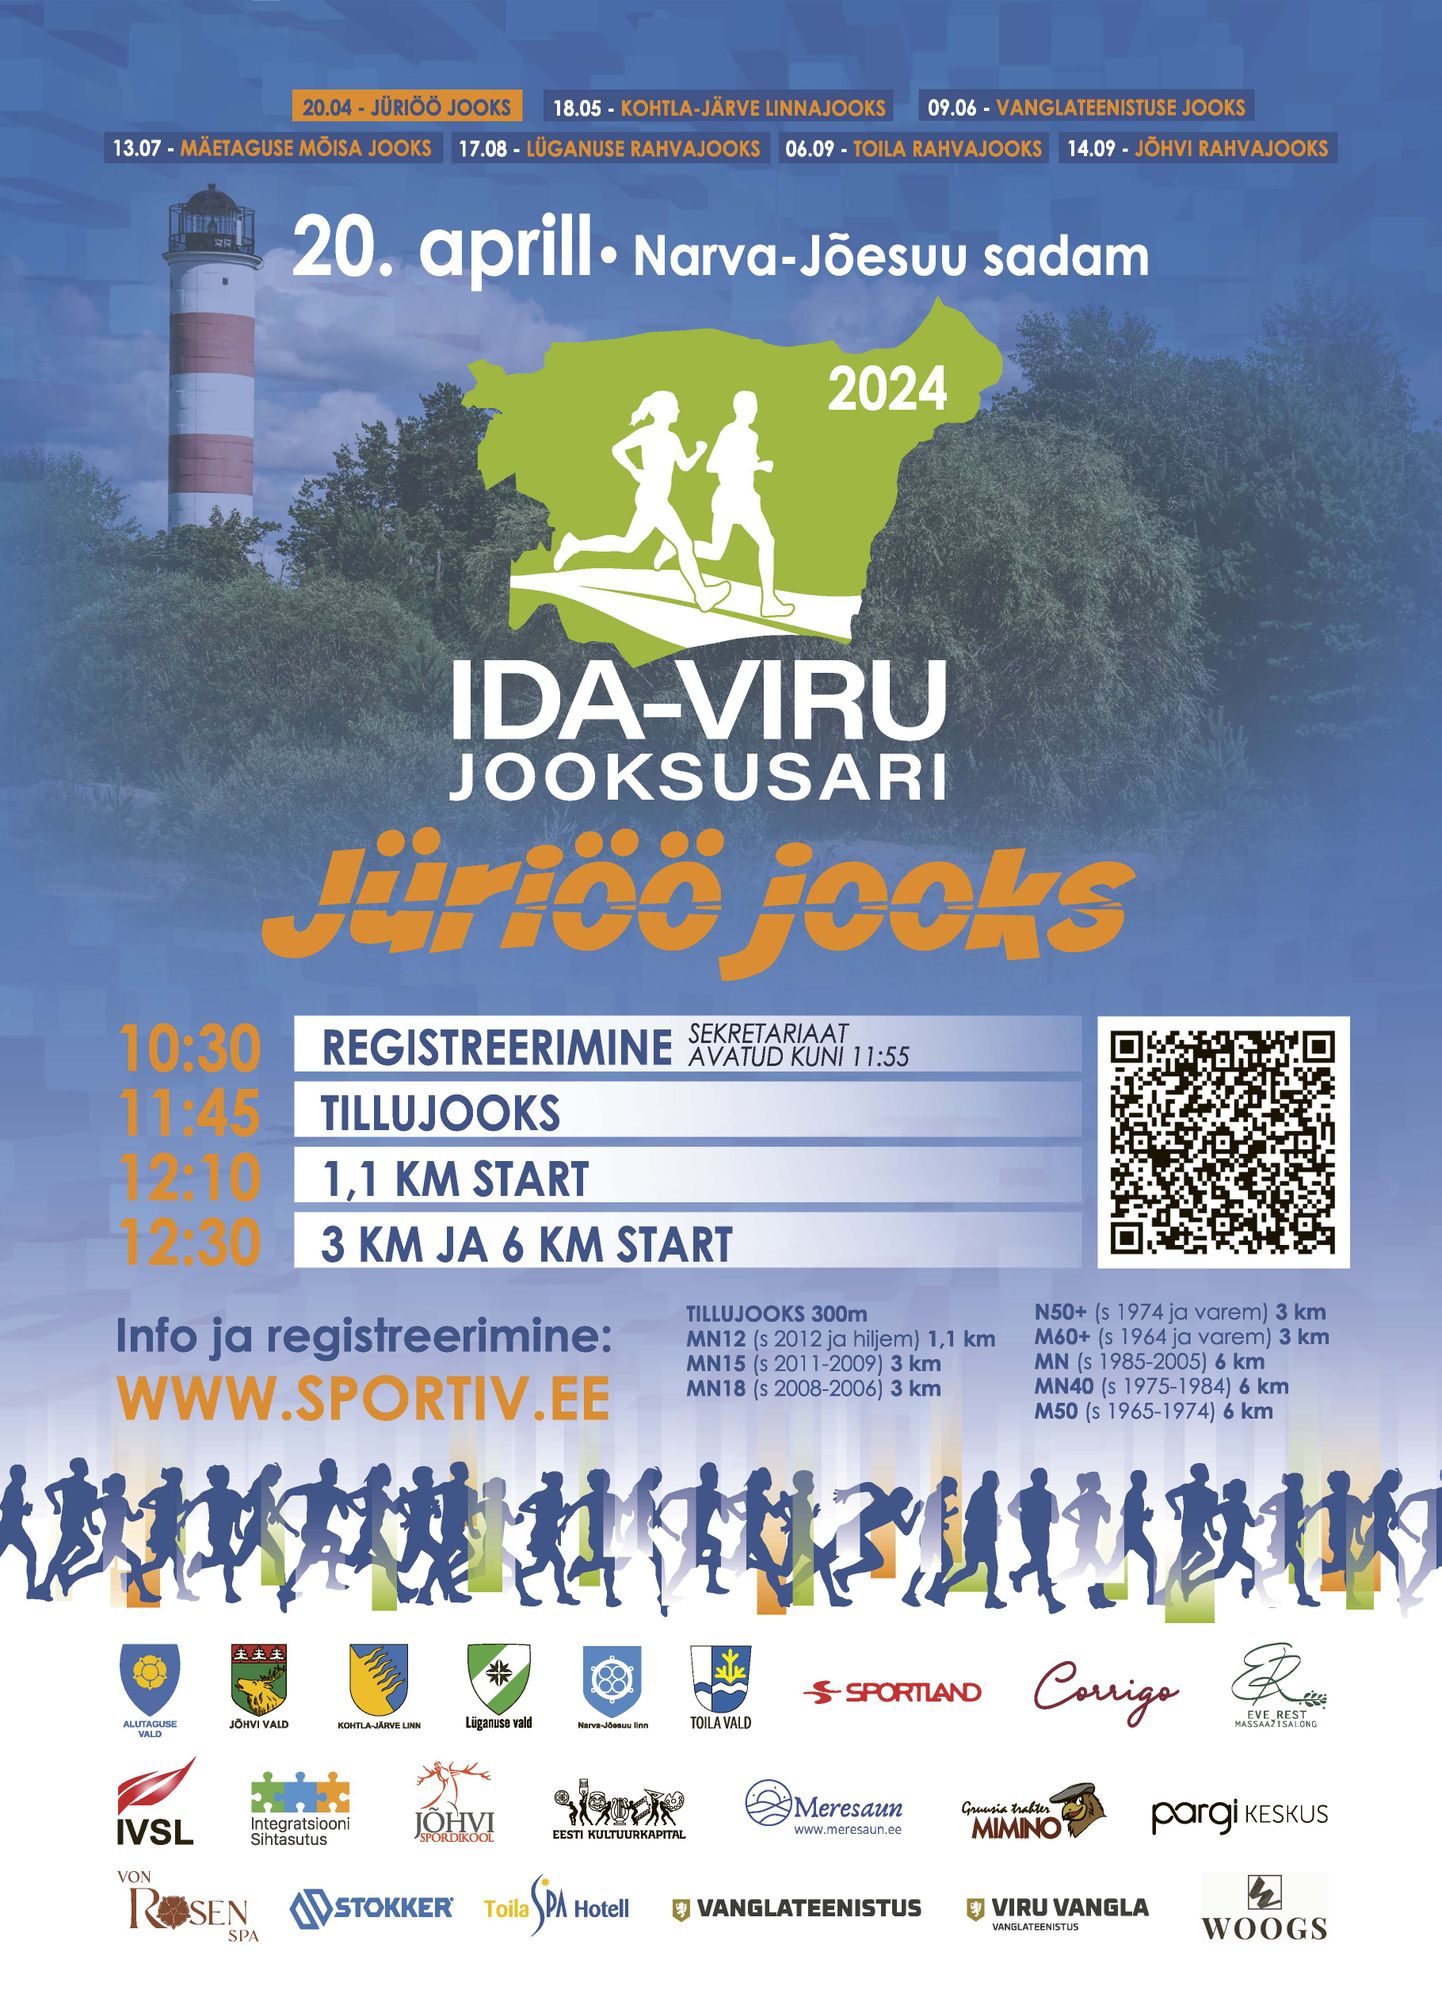 Ida-Virumaa tänavune jooksusari algab 20. aprillil Narva-Jõesuus Jüriöö jooksuga.